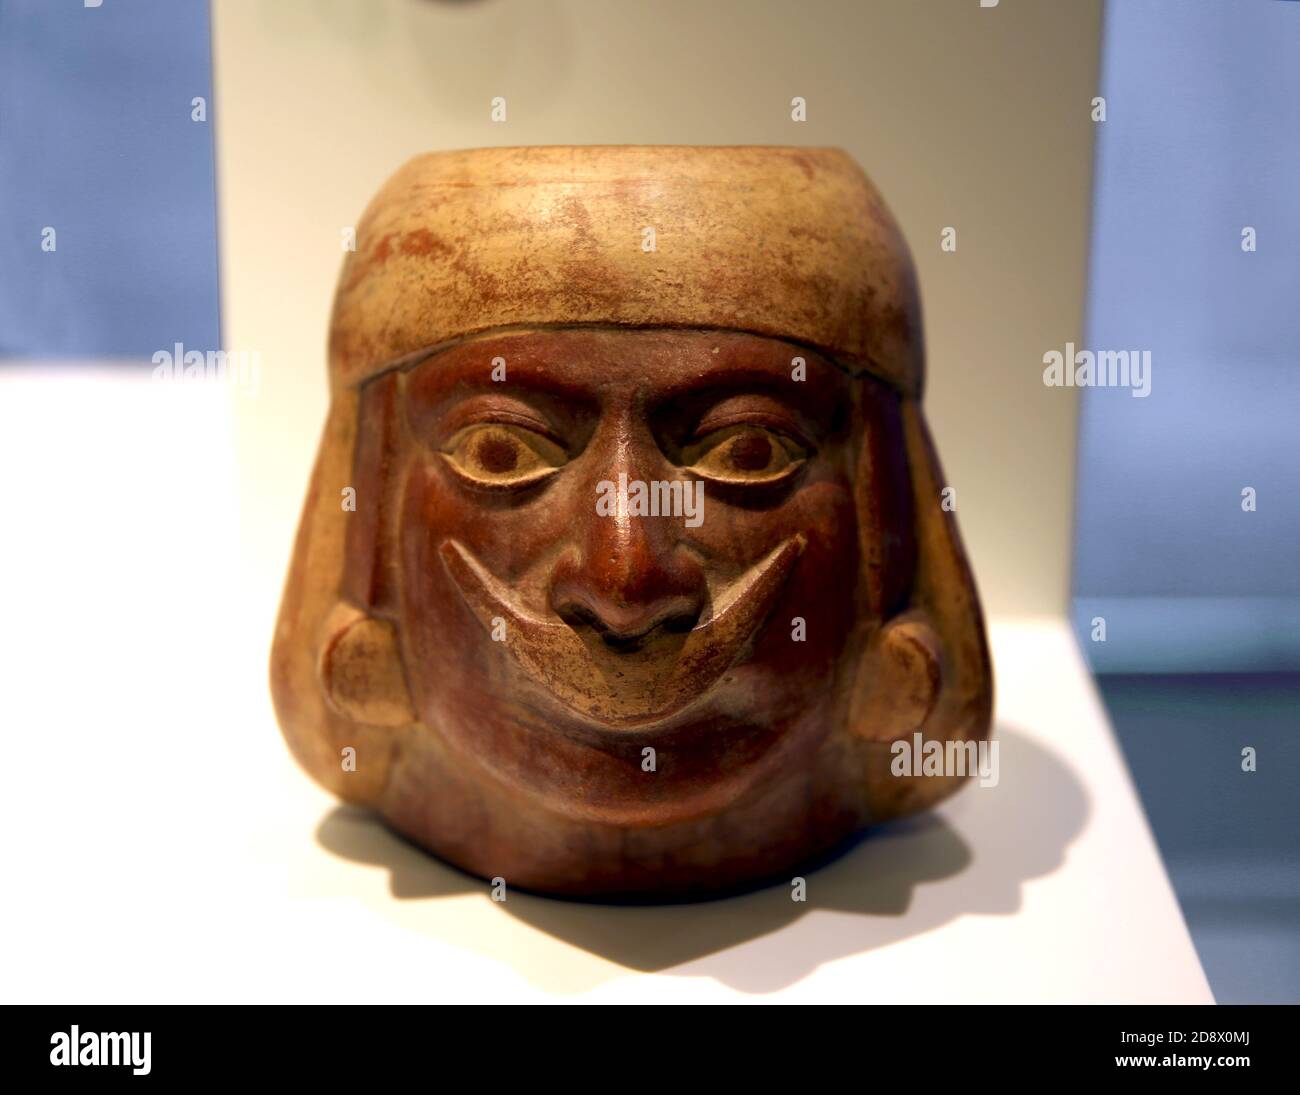 Portrait de vaisseau Huaco représentant une figure d'élite (1-800 AD). Poterie. Culture Mochica, Pérou. Musée des cultures du monde, Barcelone. Espagne. Banque D'Images